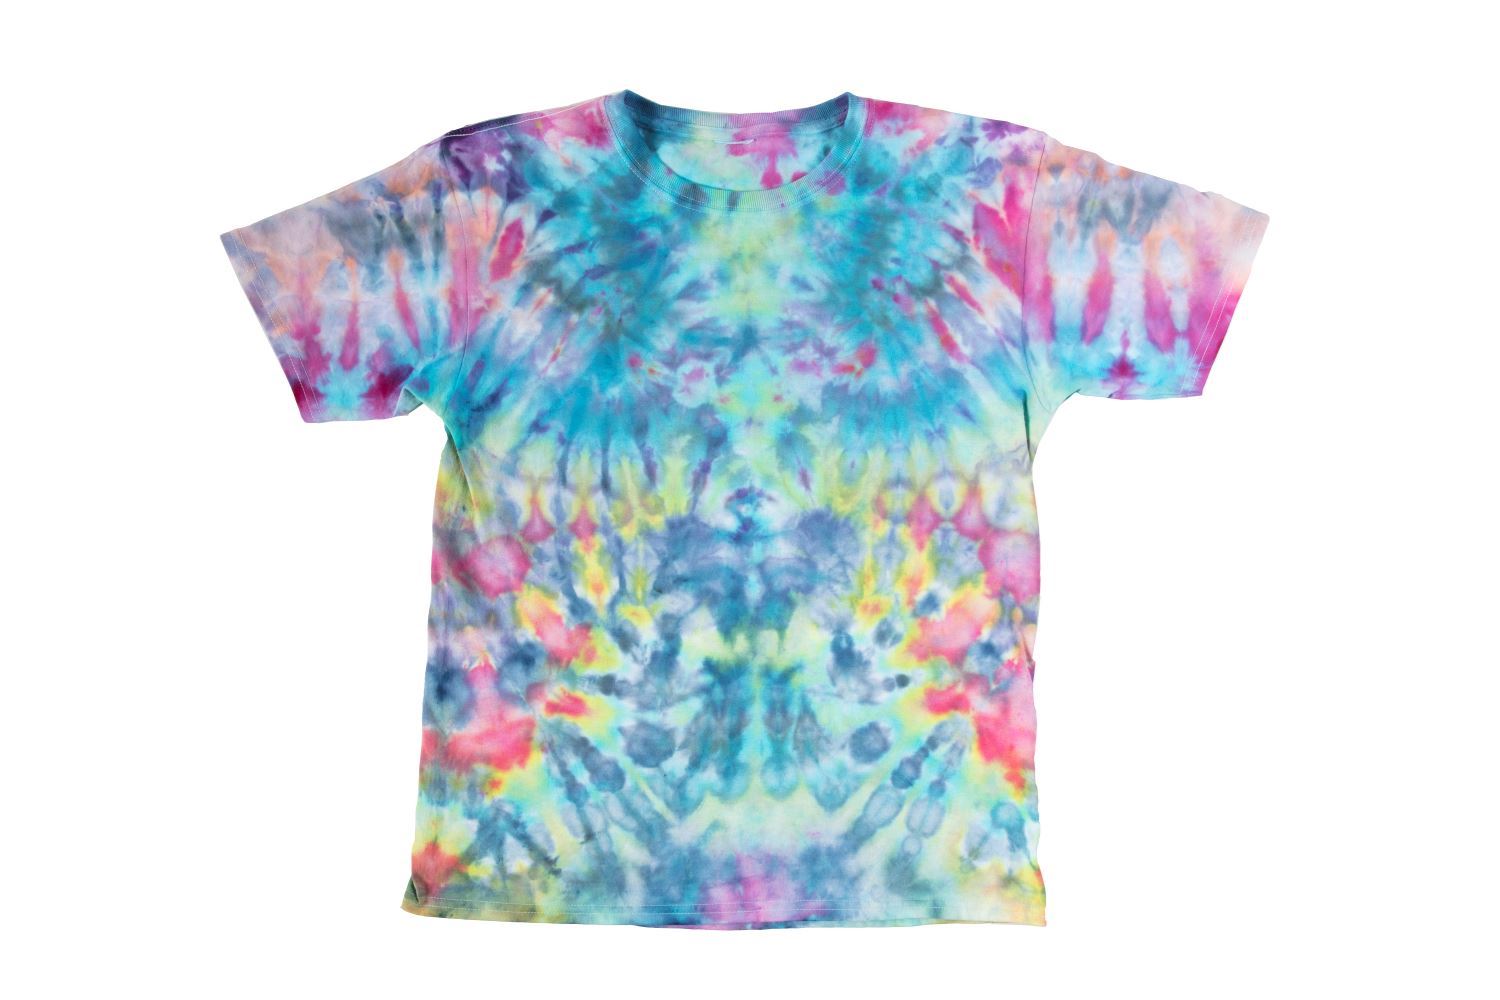 Kaleidoscope ice dye shirt